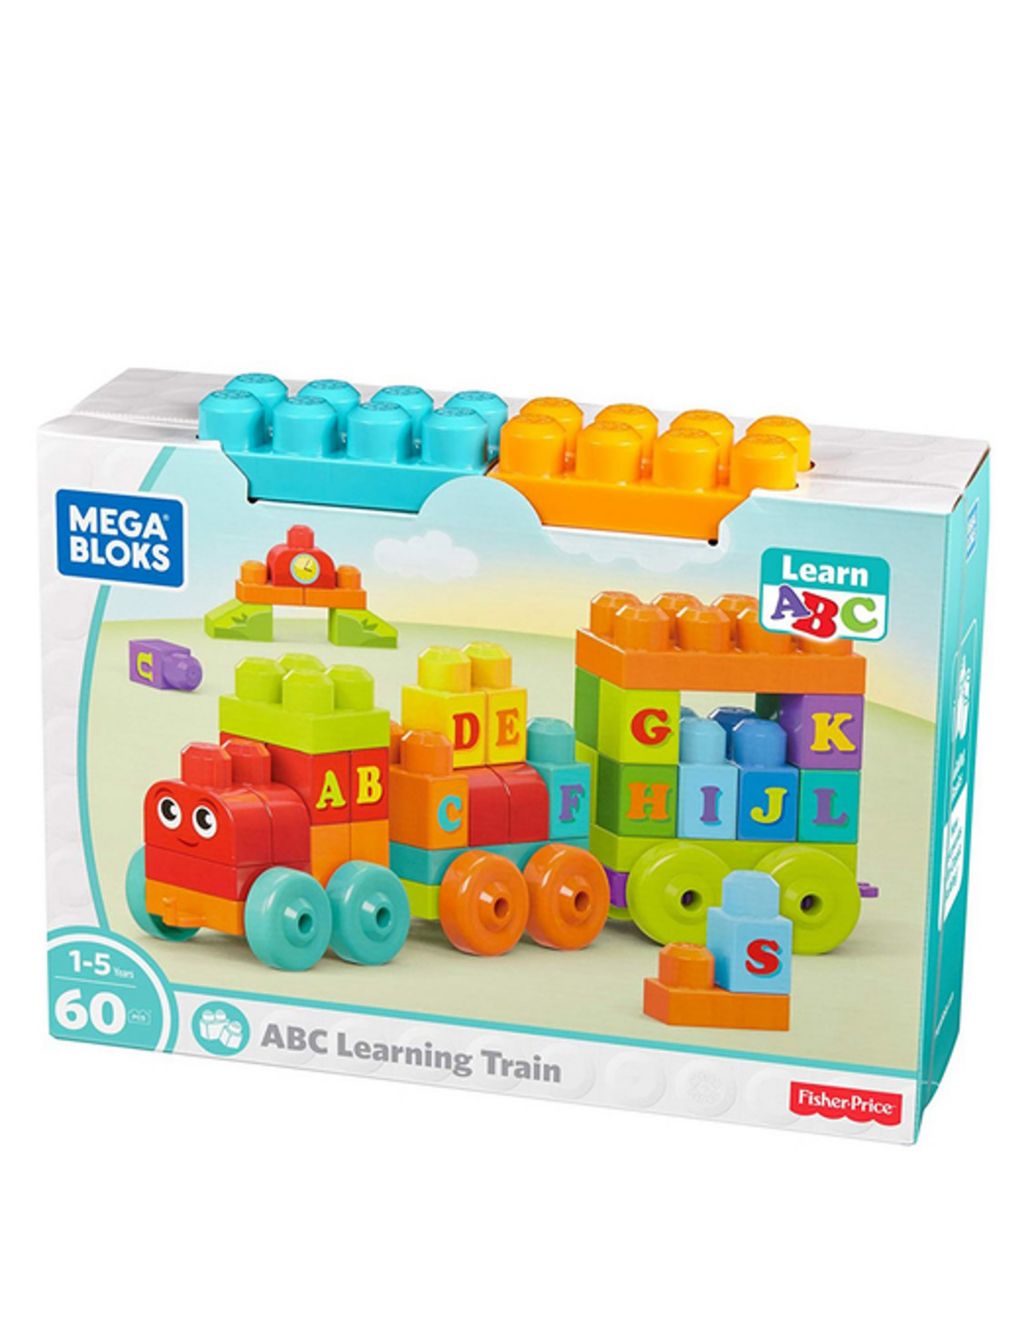 Alphabet Train Toy (1-5 Yrs)